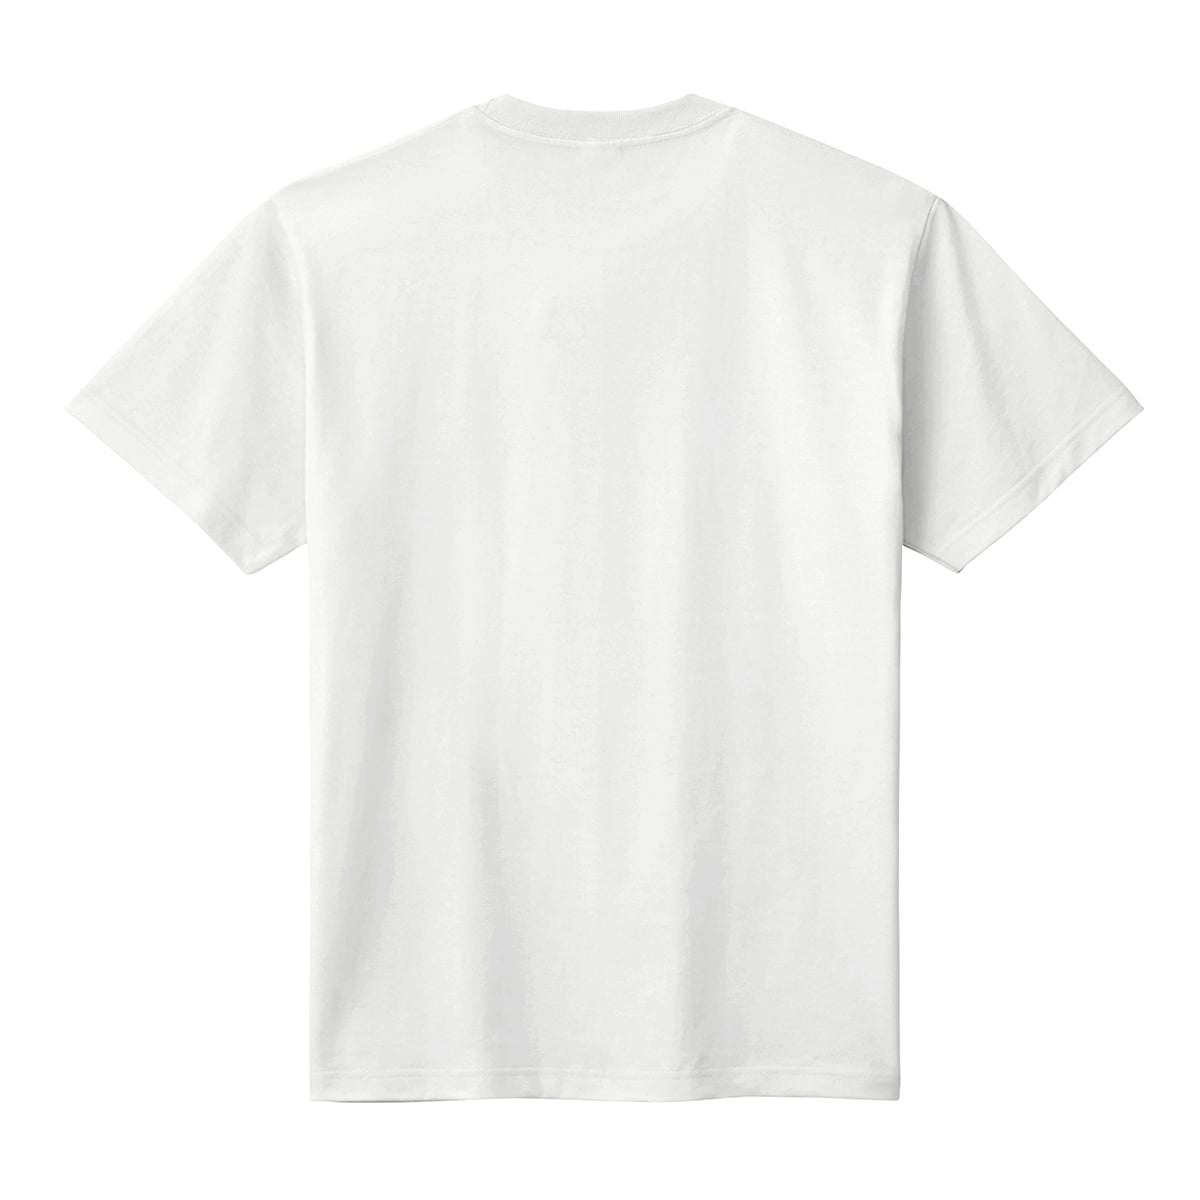 コットンtシャツ ヘビーウェイトtシャツ 白 レギュラーサイズ 胸ワンポイントプリント オリジナルウェア Com